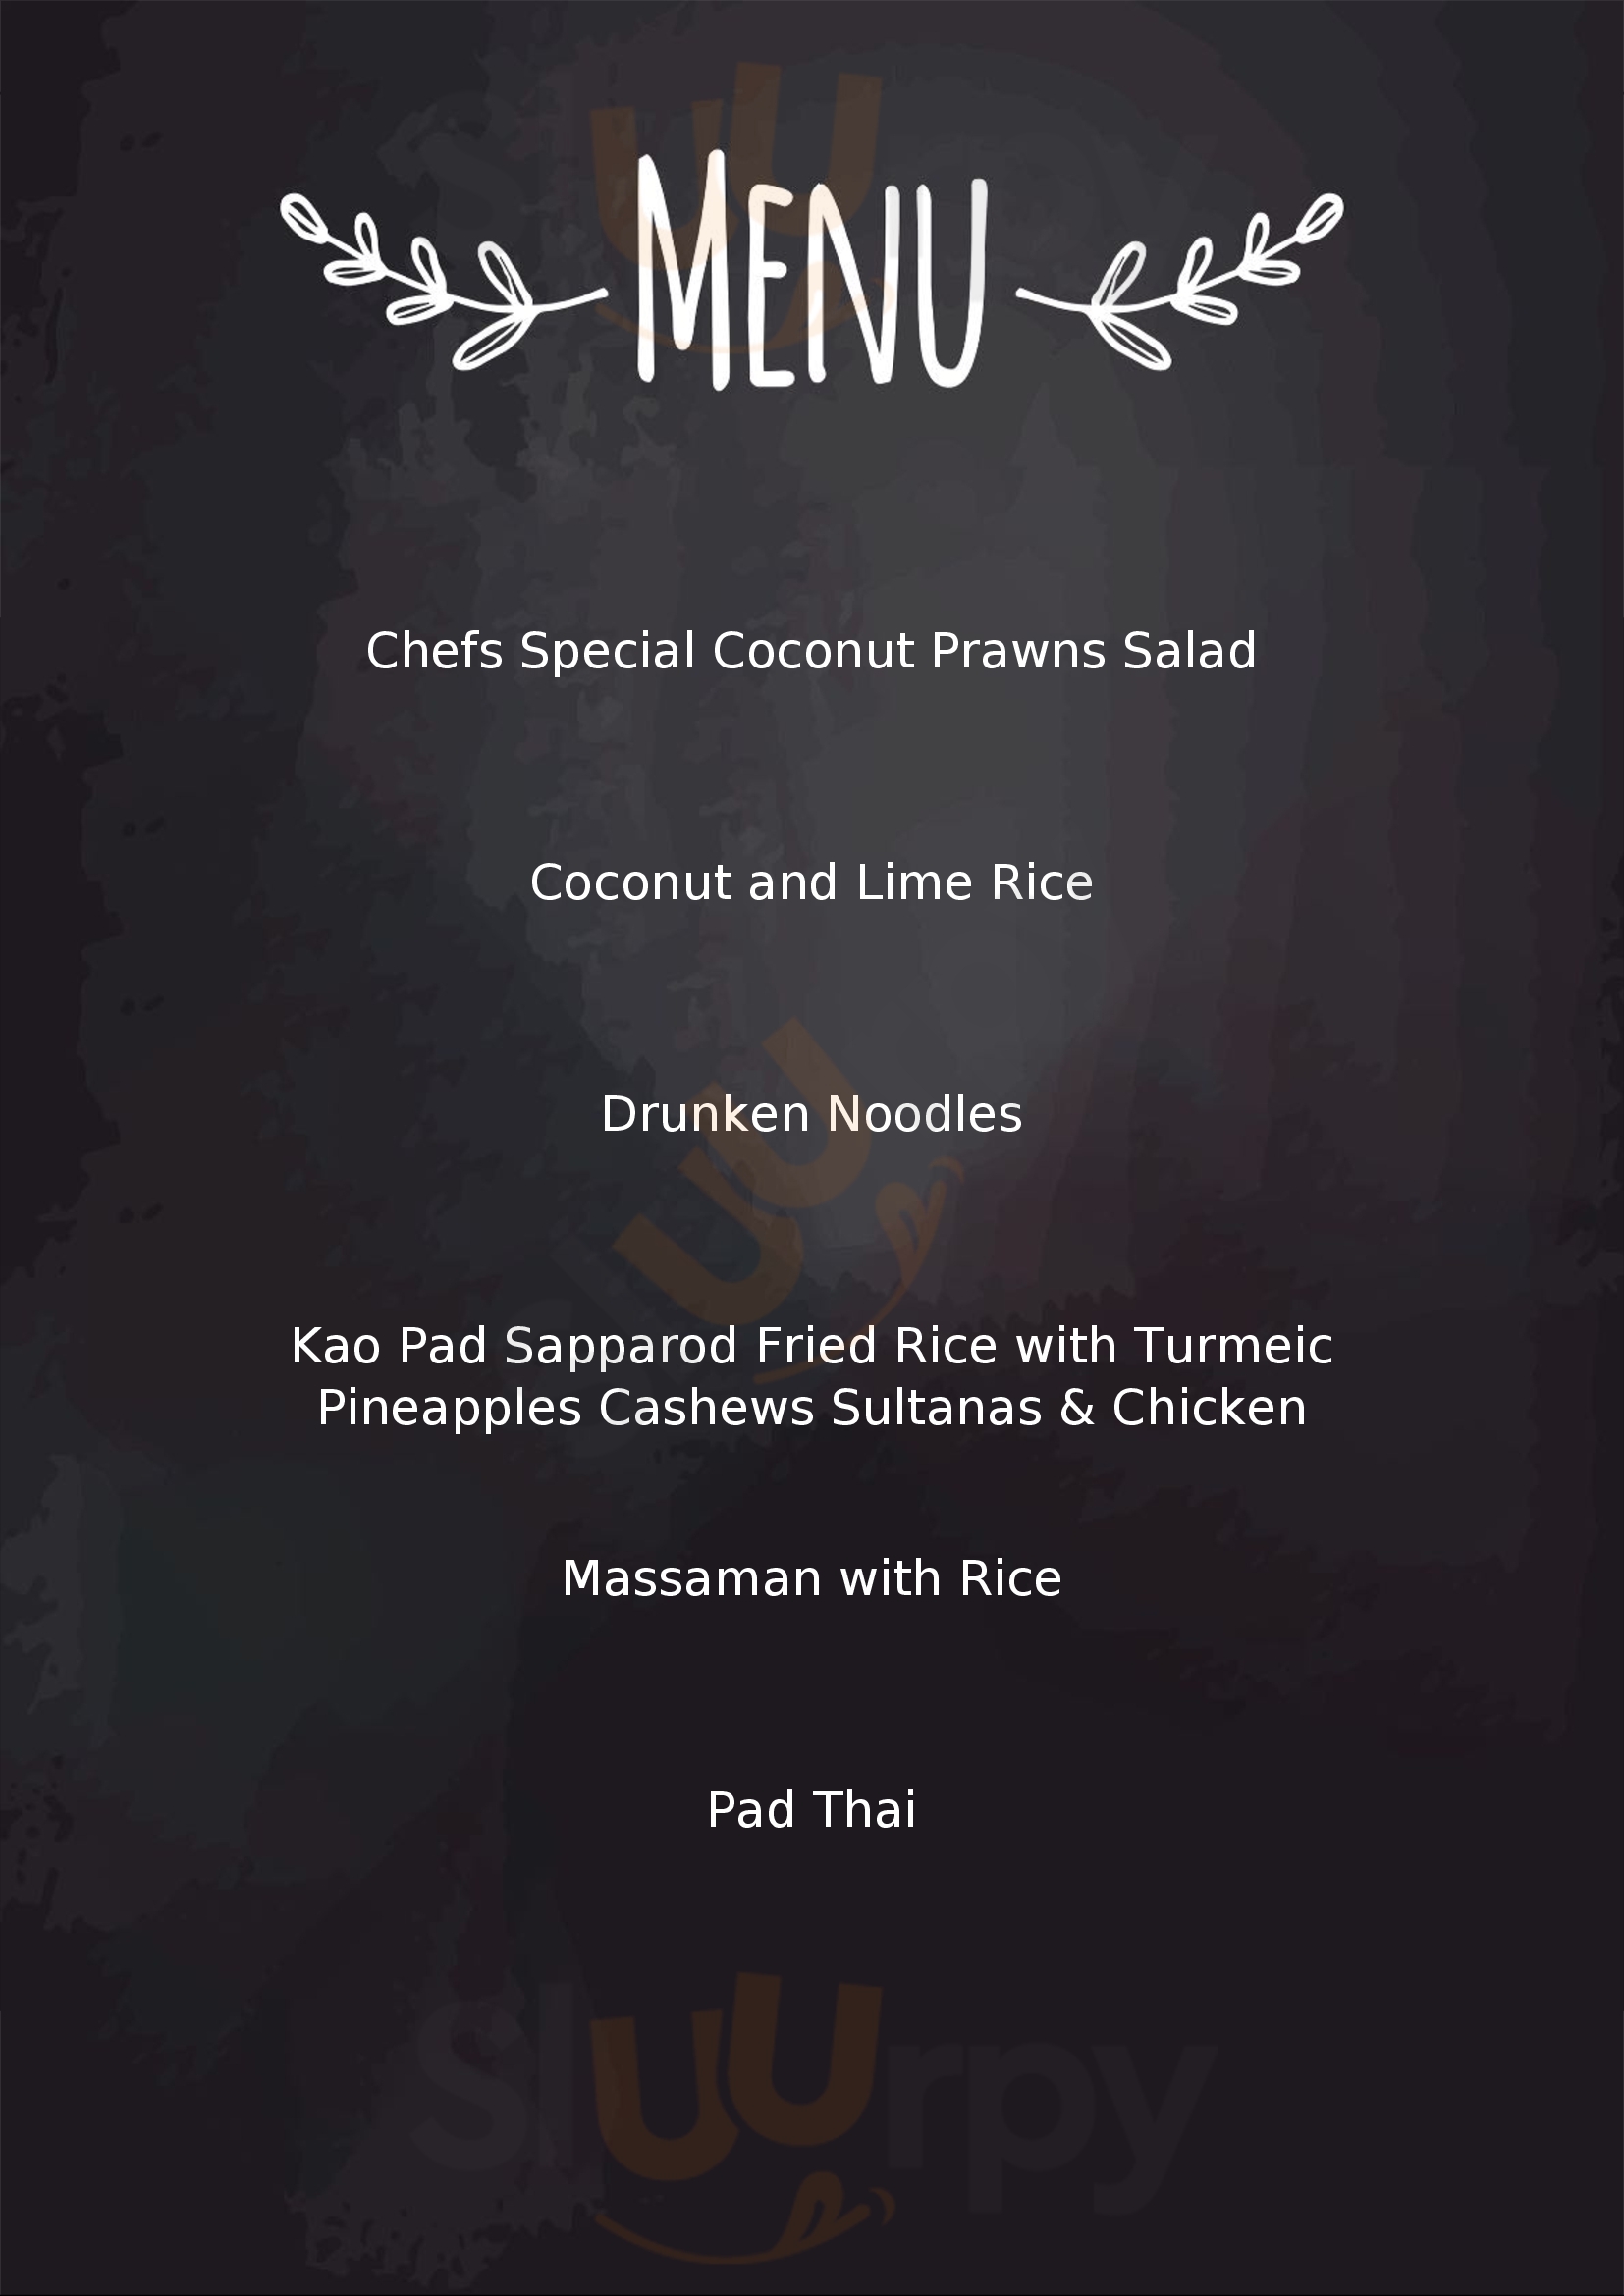 White Elephant Thai Restaurant Bunbury Menu - 1